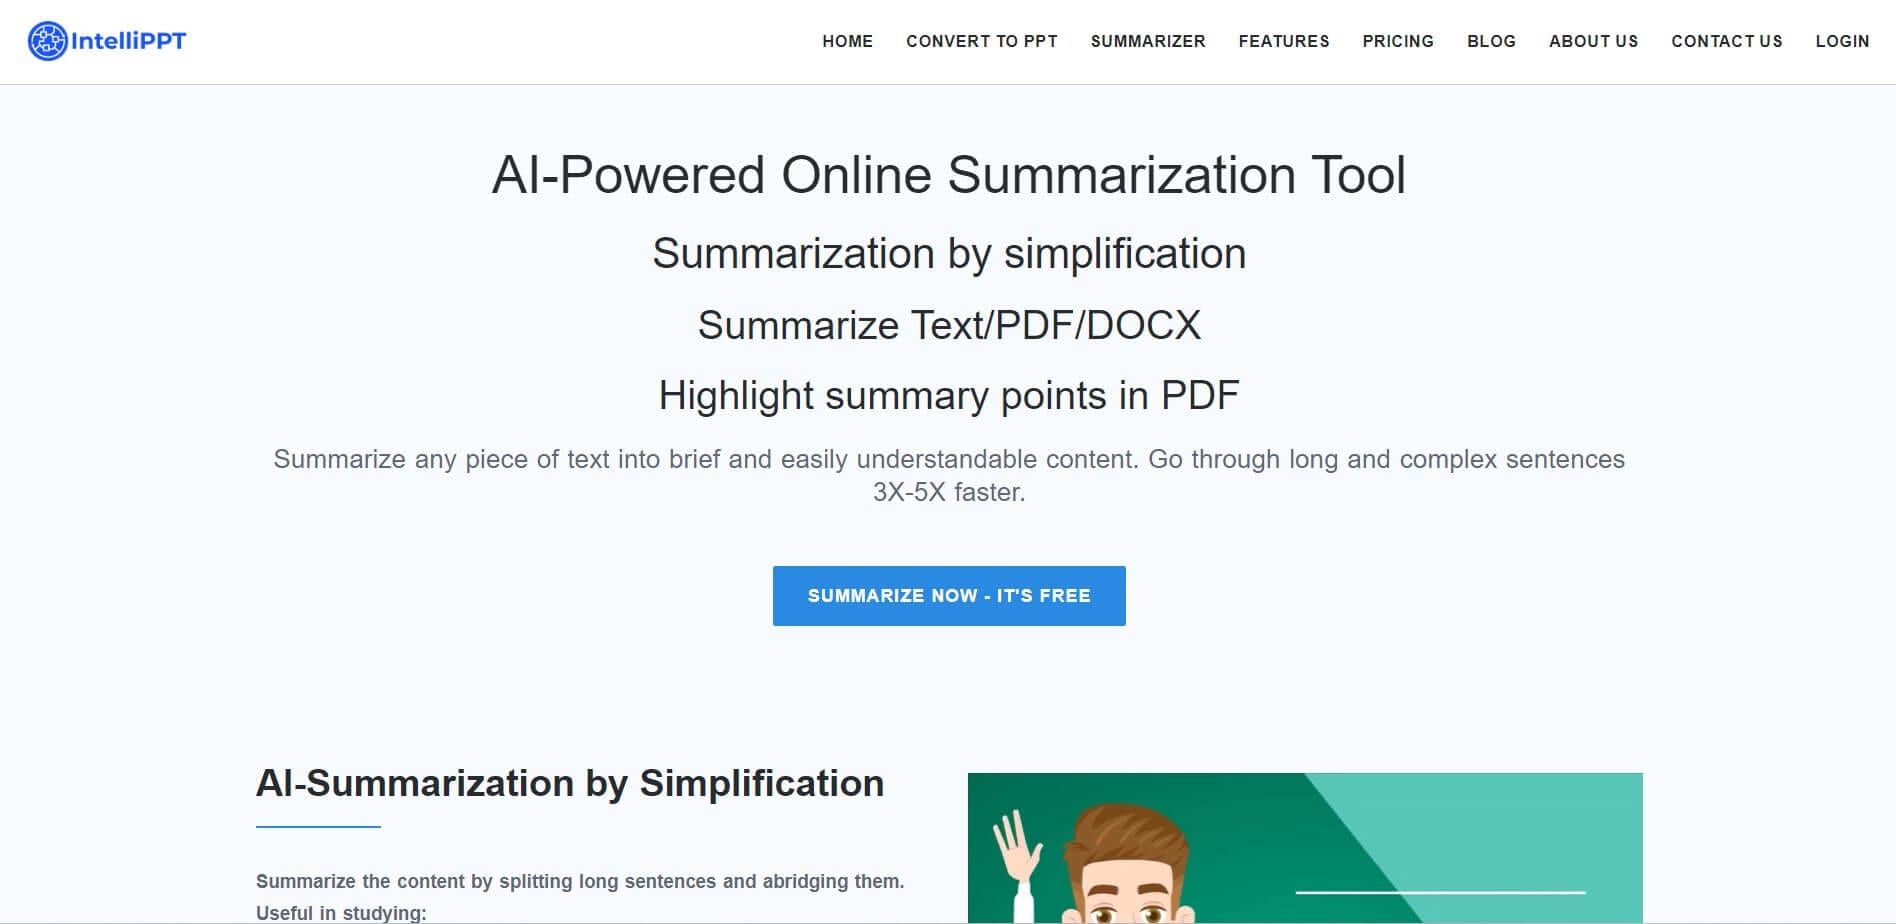 página de inicio de la herramienta de resumen en línea intellippt